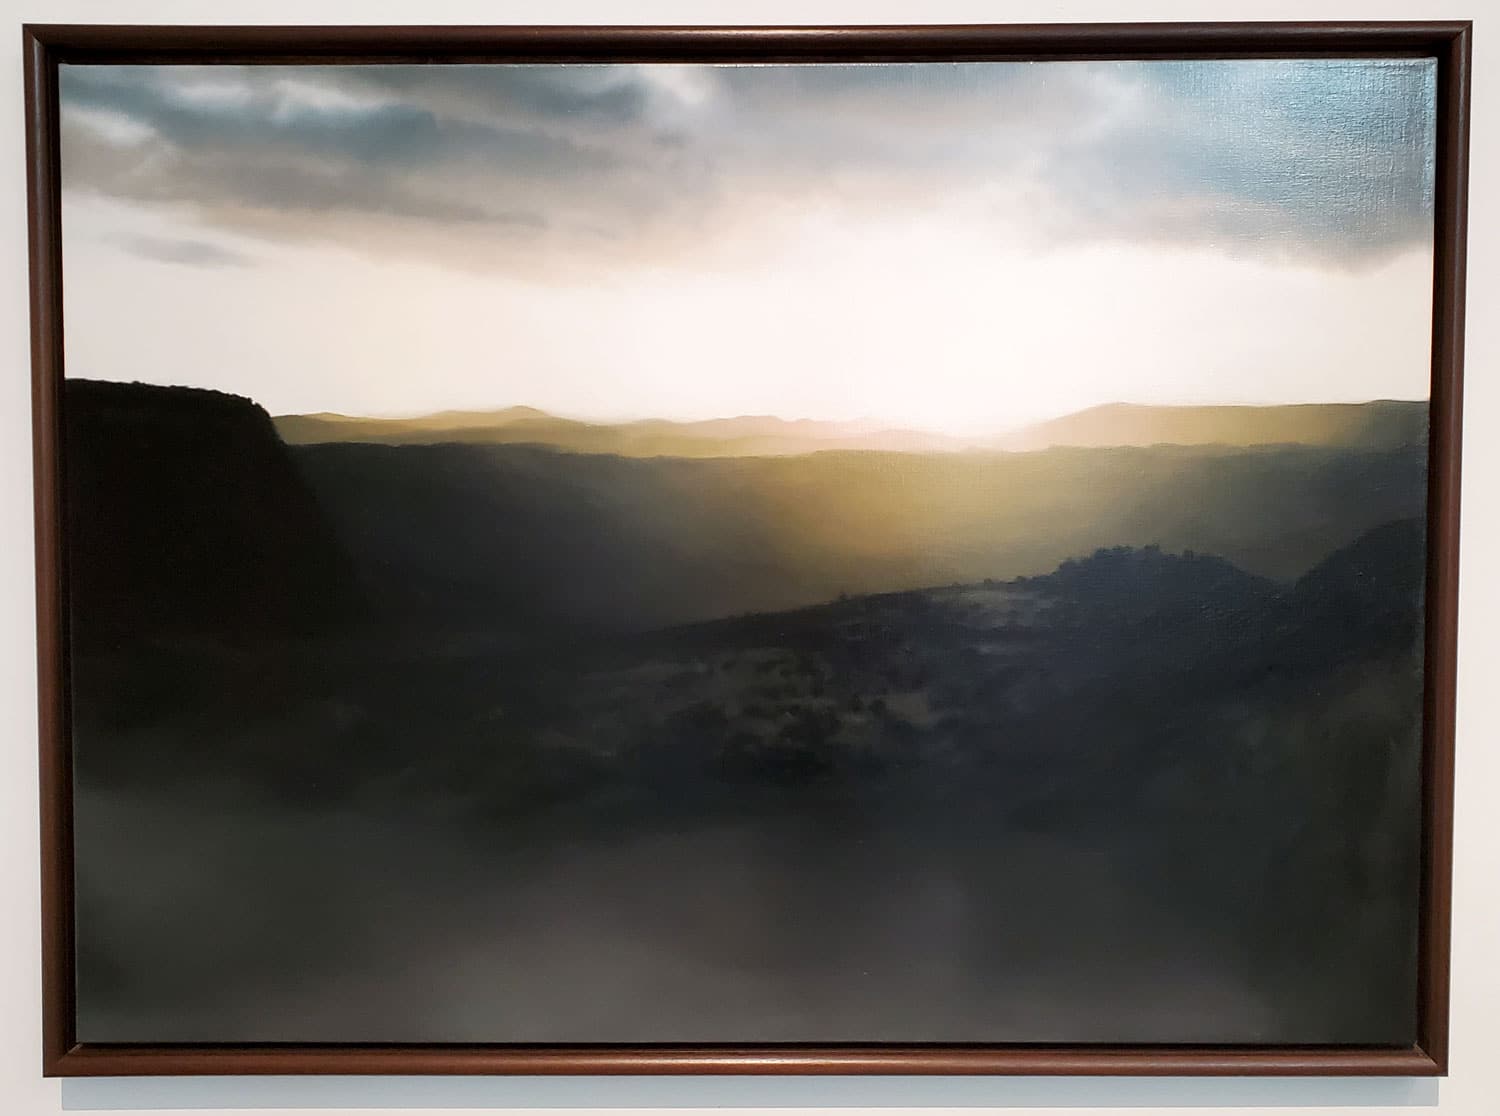 Landschaft (Landscape) by Gerhard Richter at the Des Moines Art Center.